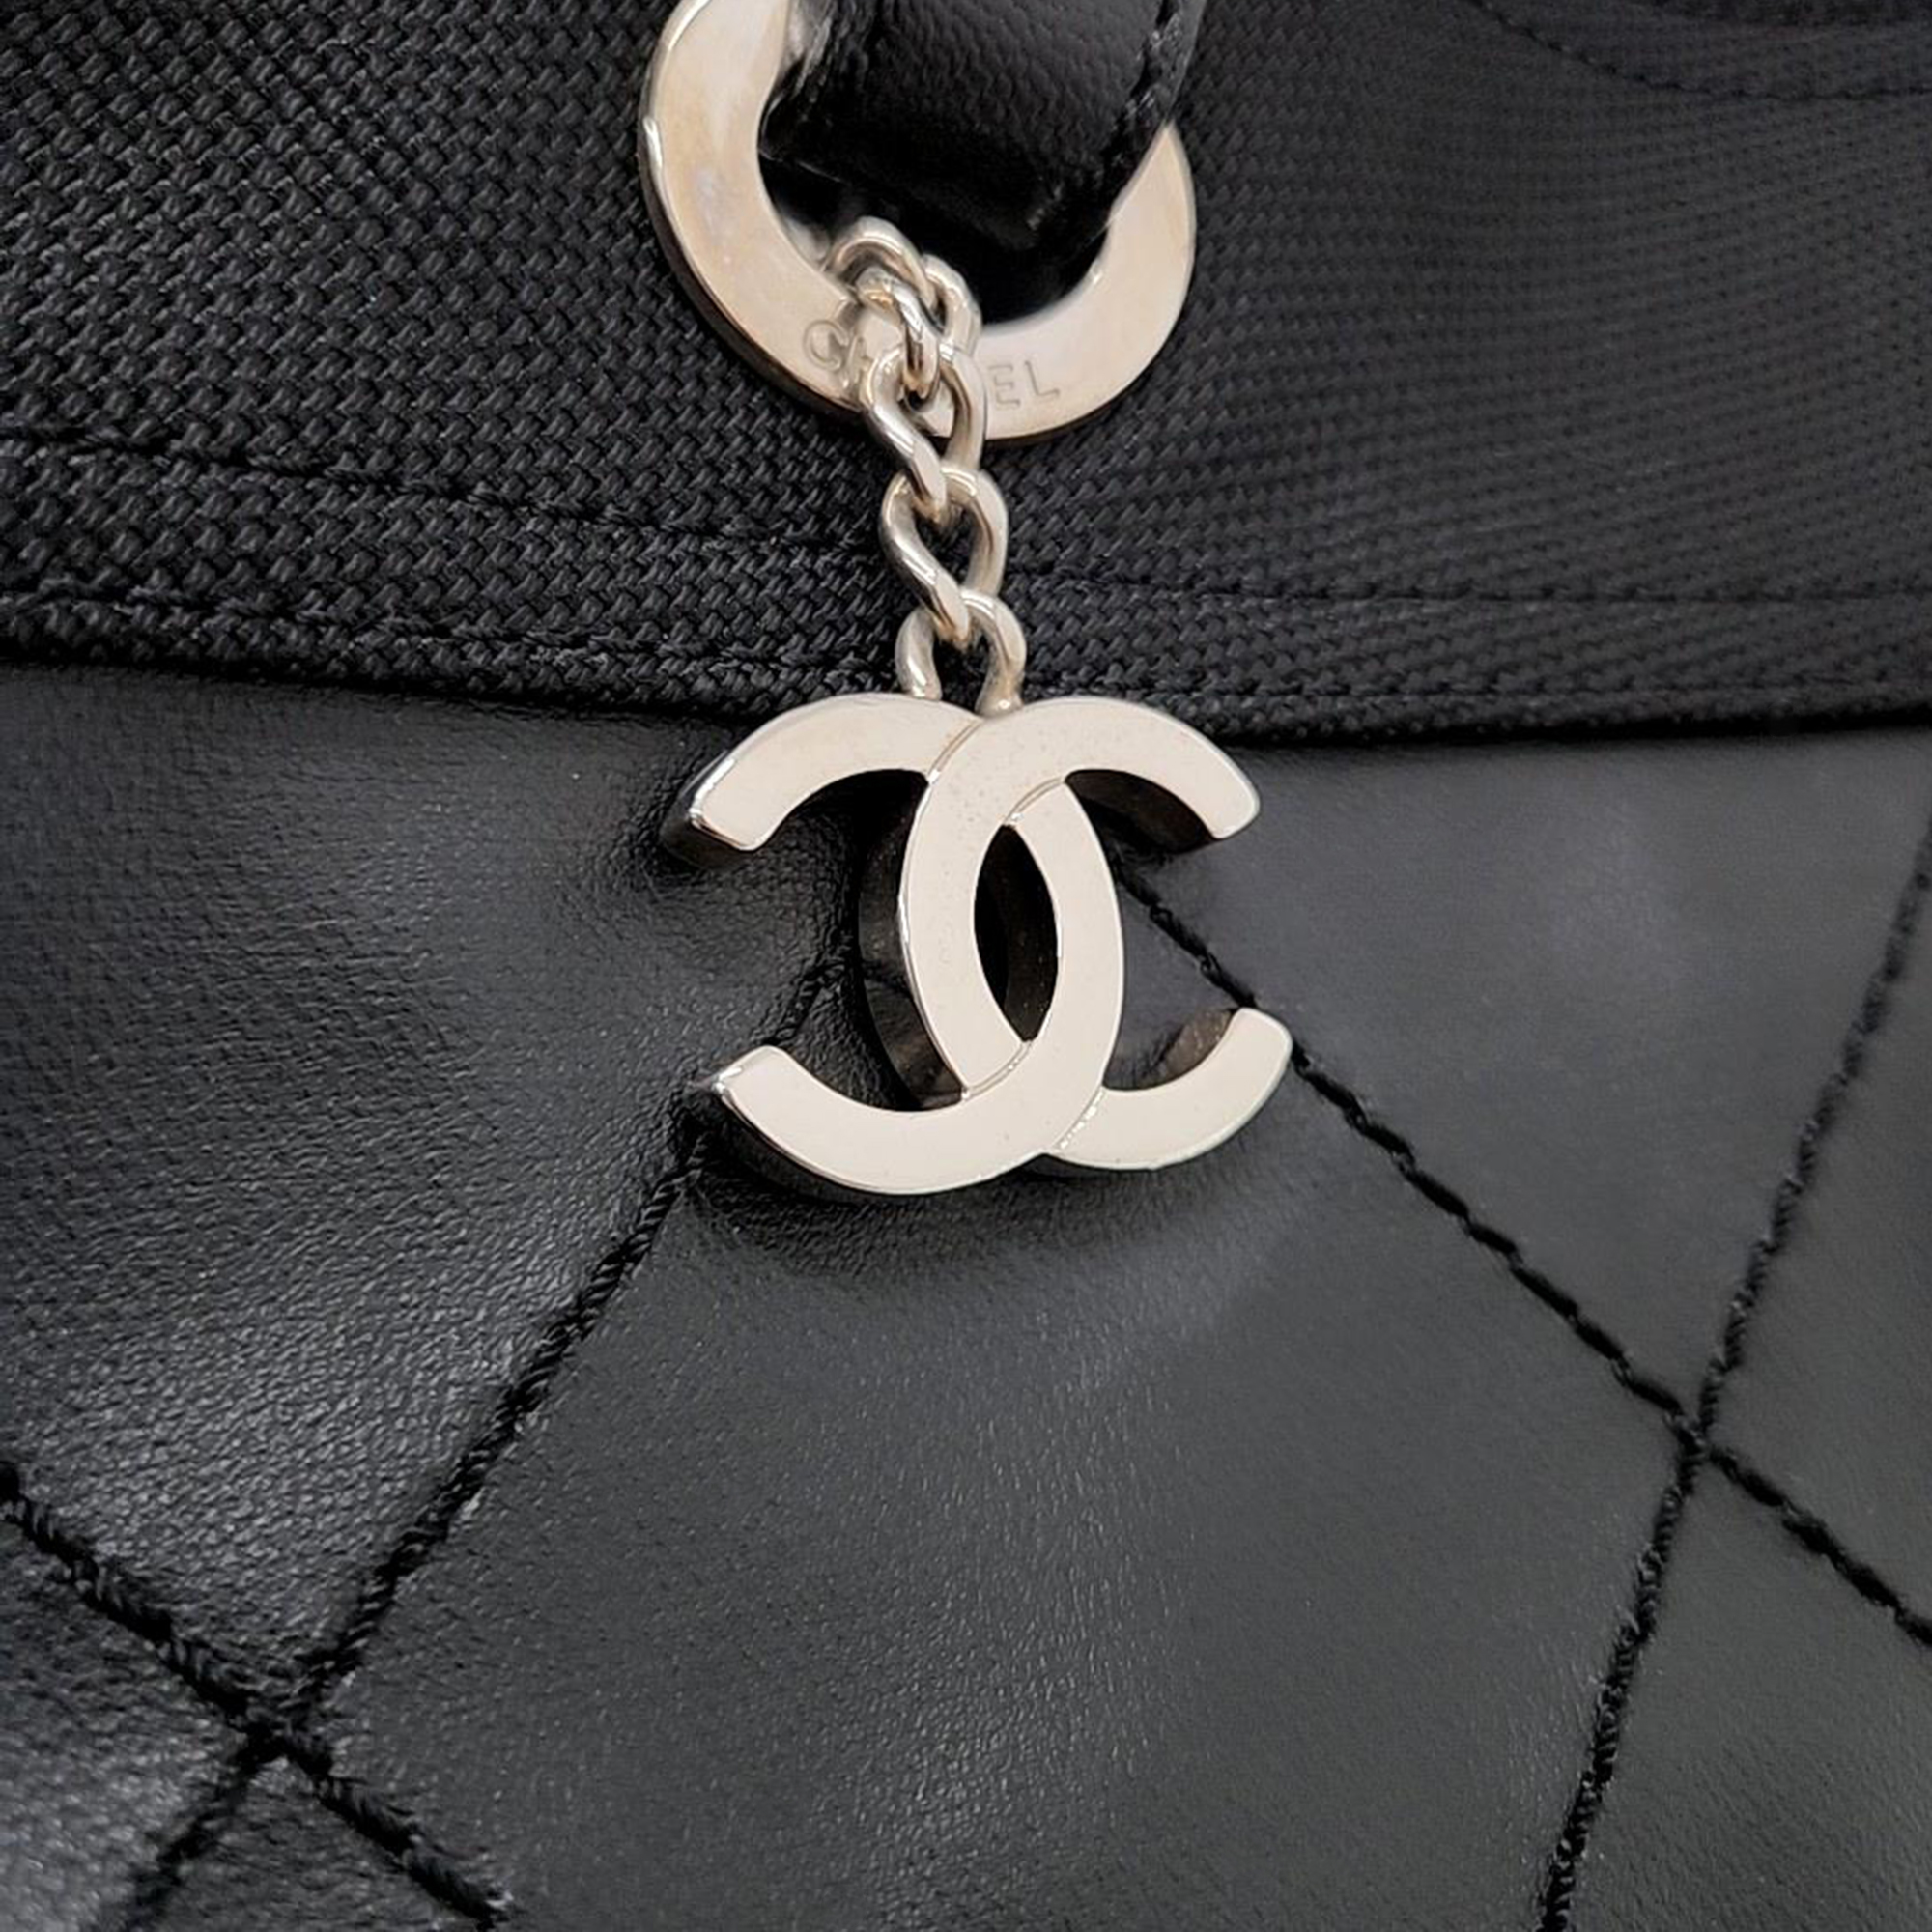 Chanel Biarritz Shoulder Bag